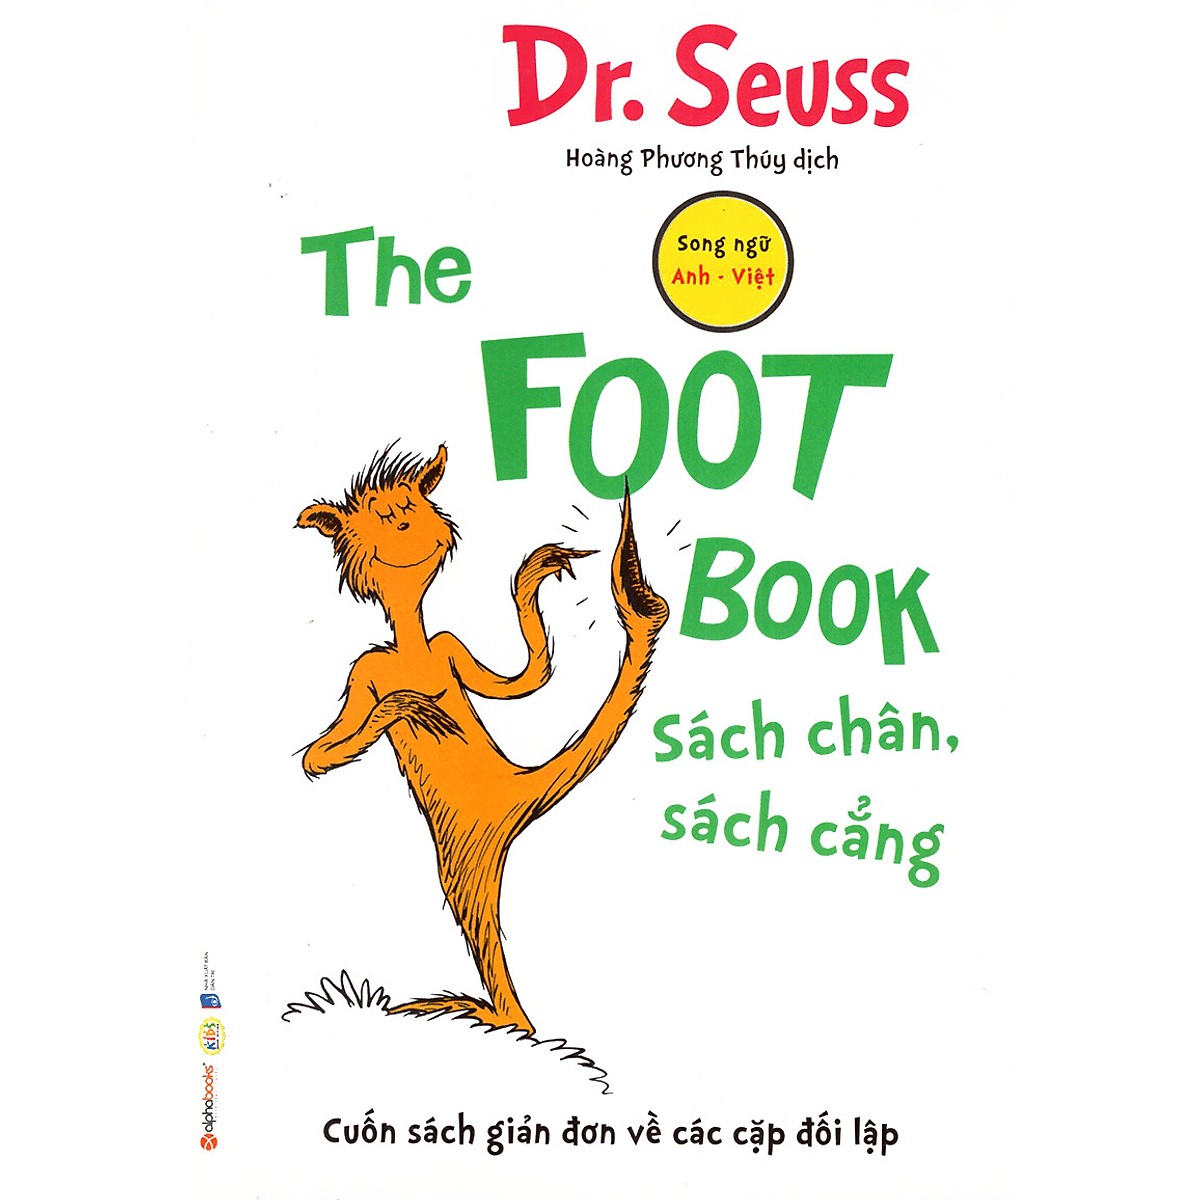 Bộ 8 Cuốn Sách Song Ngữ Dr. Seuss Kinh Điển Giúp Trẻ Học Tiếng Anh  (Quà Tặng: Cây Viết Galaxy )